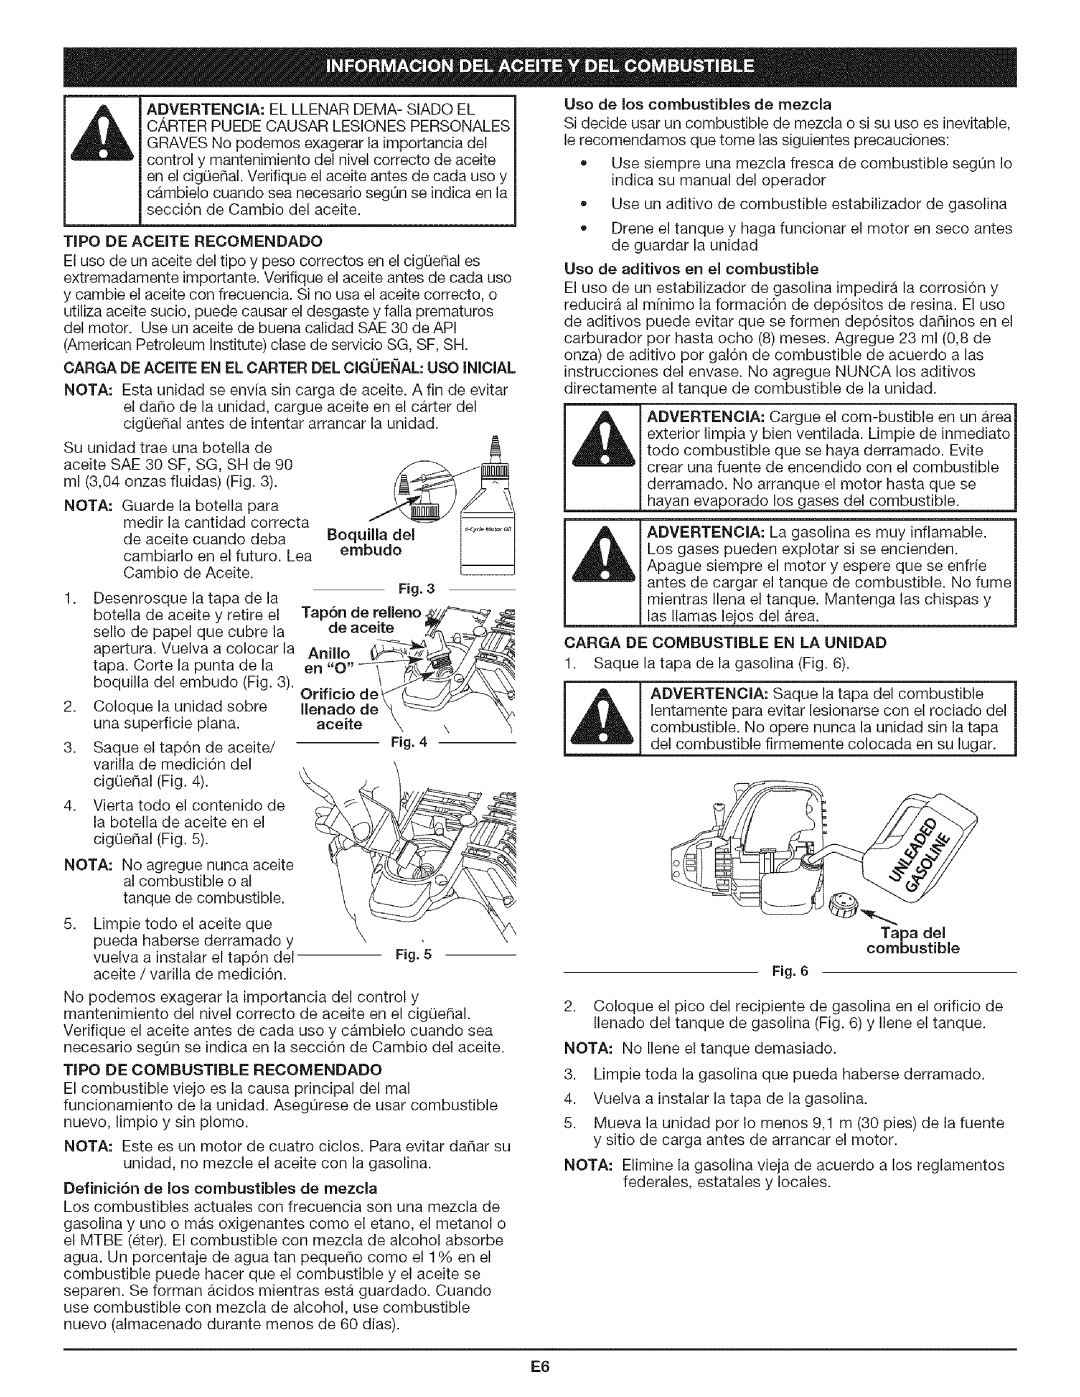 Craftsman 316.79197 manual Tapa del combustible 